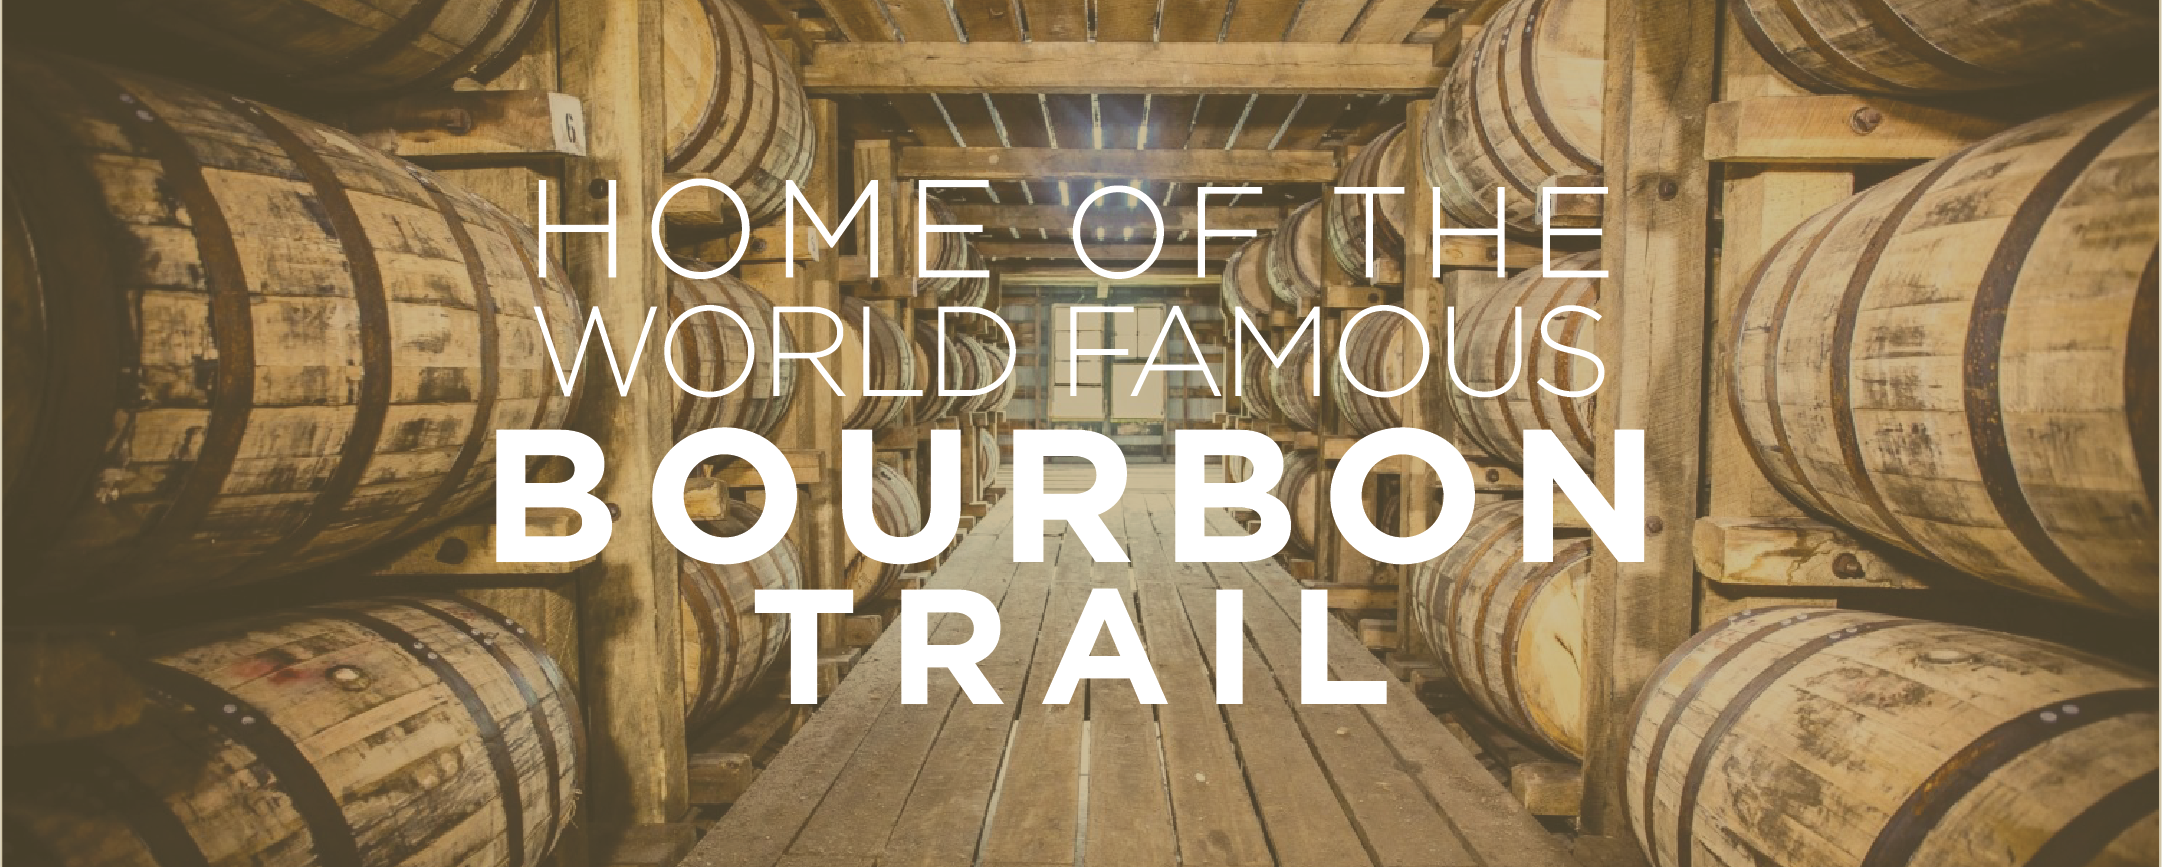 Bourbon trail.png